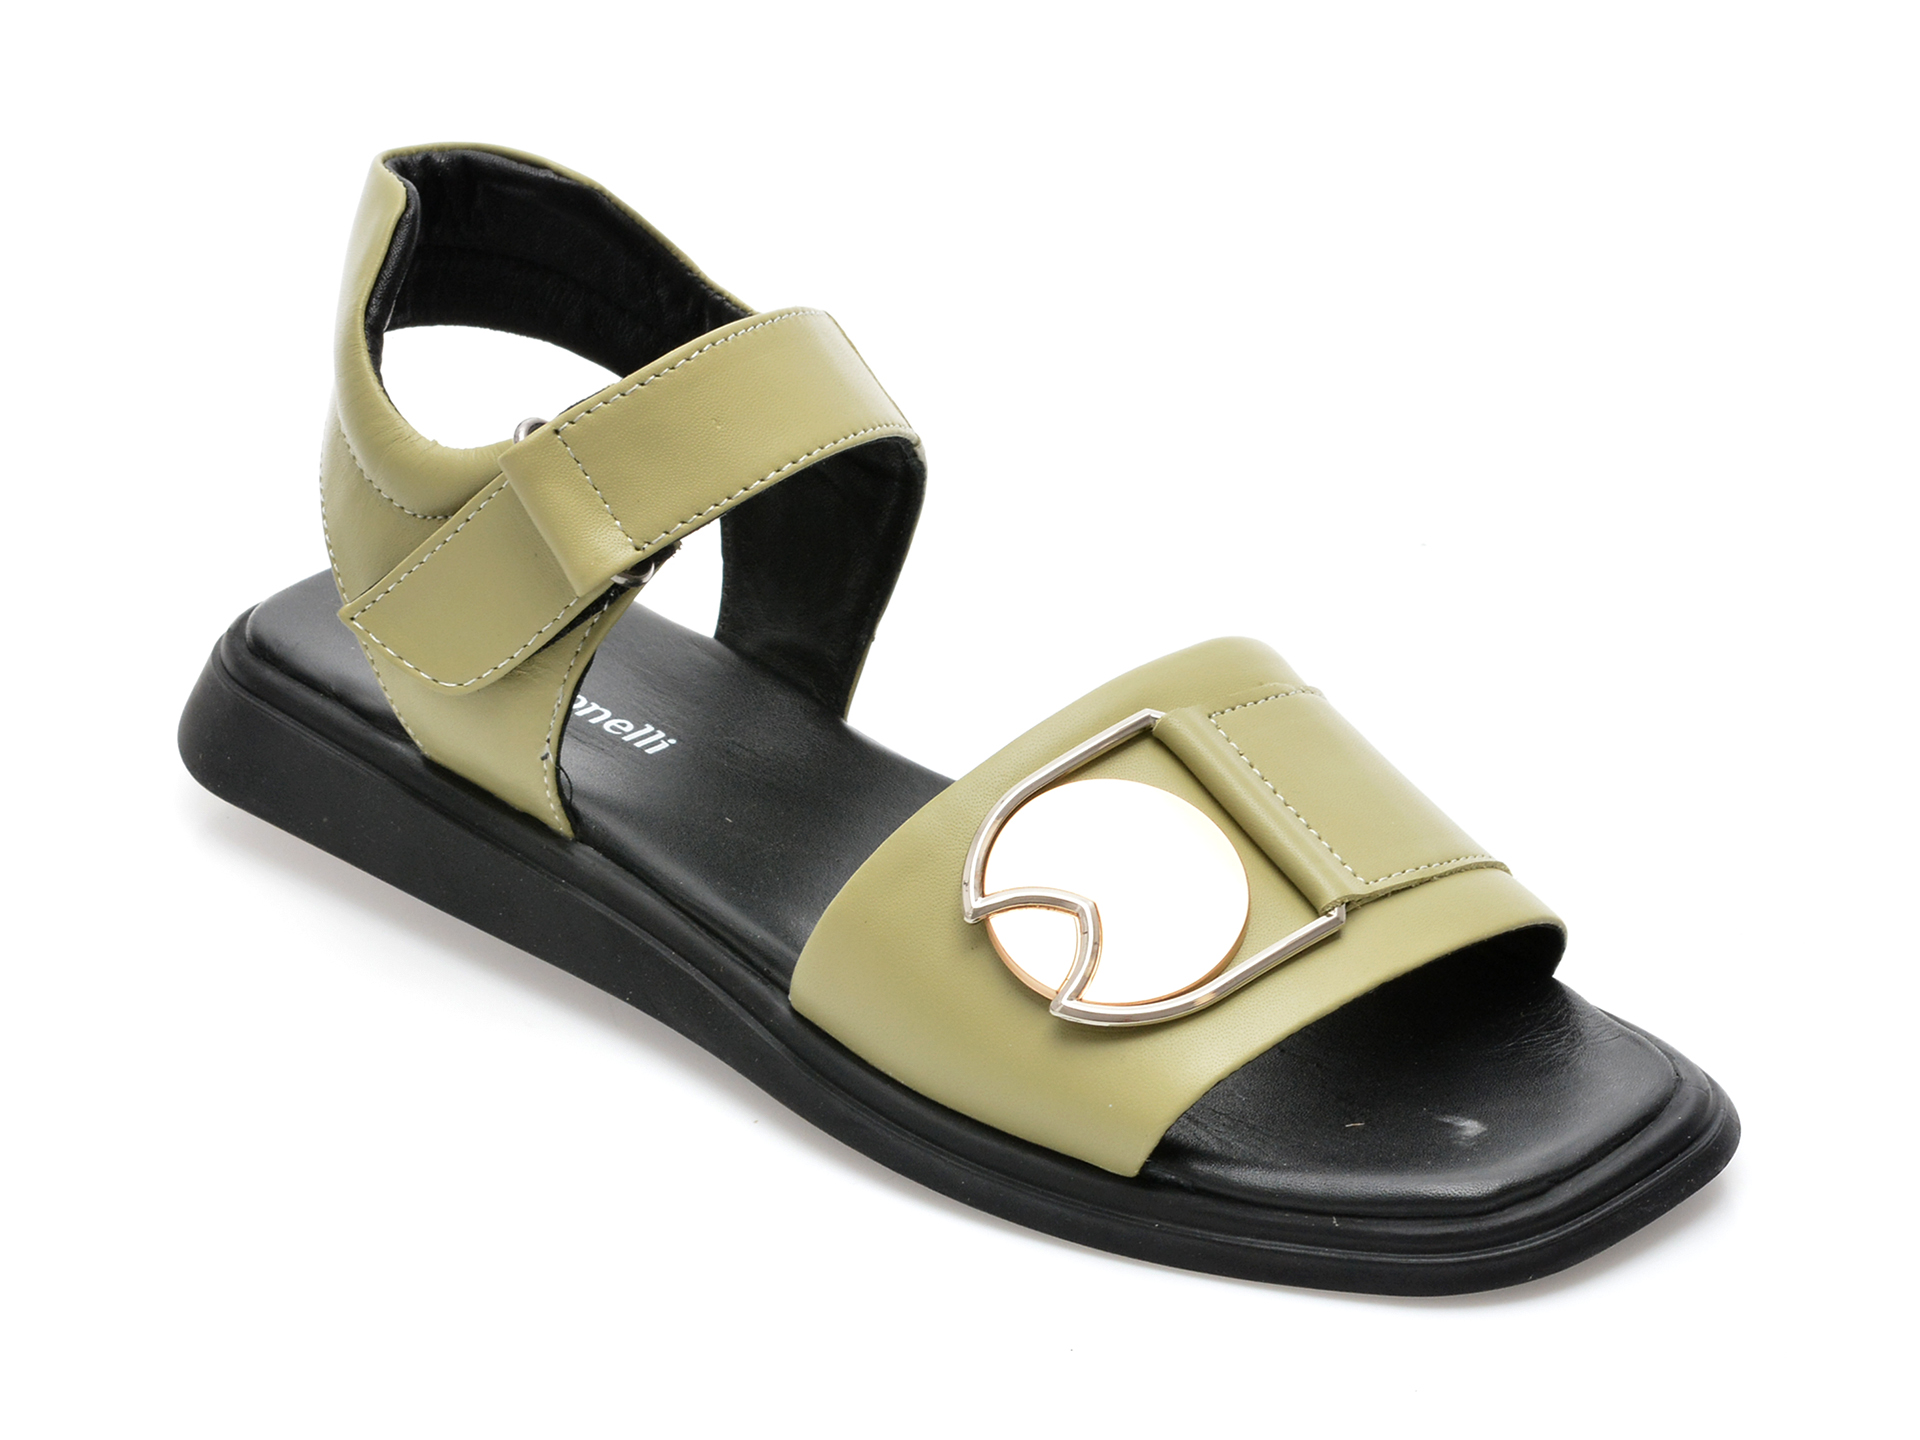 Sandale FABIO MONELLI verzi, 678, din piele naturala /femei/sandale imagine noua